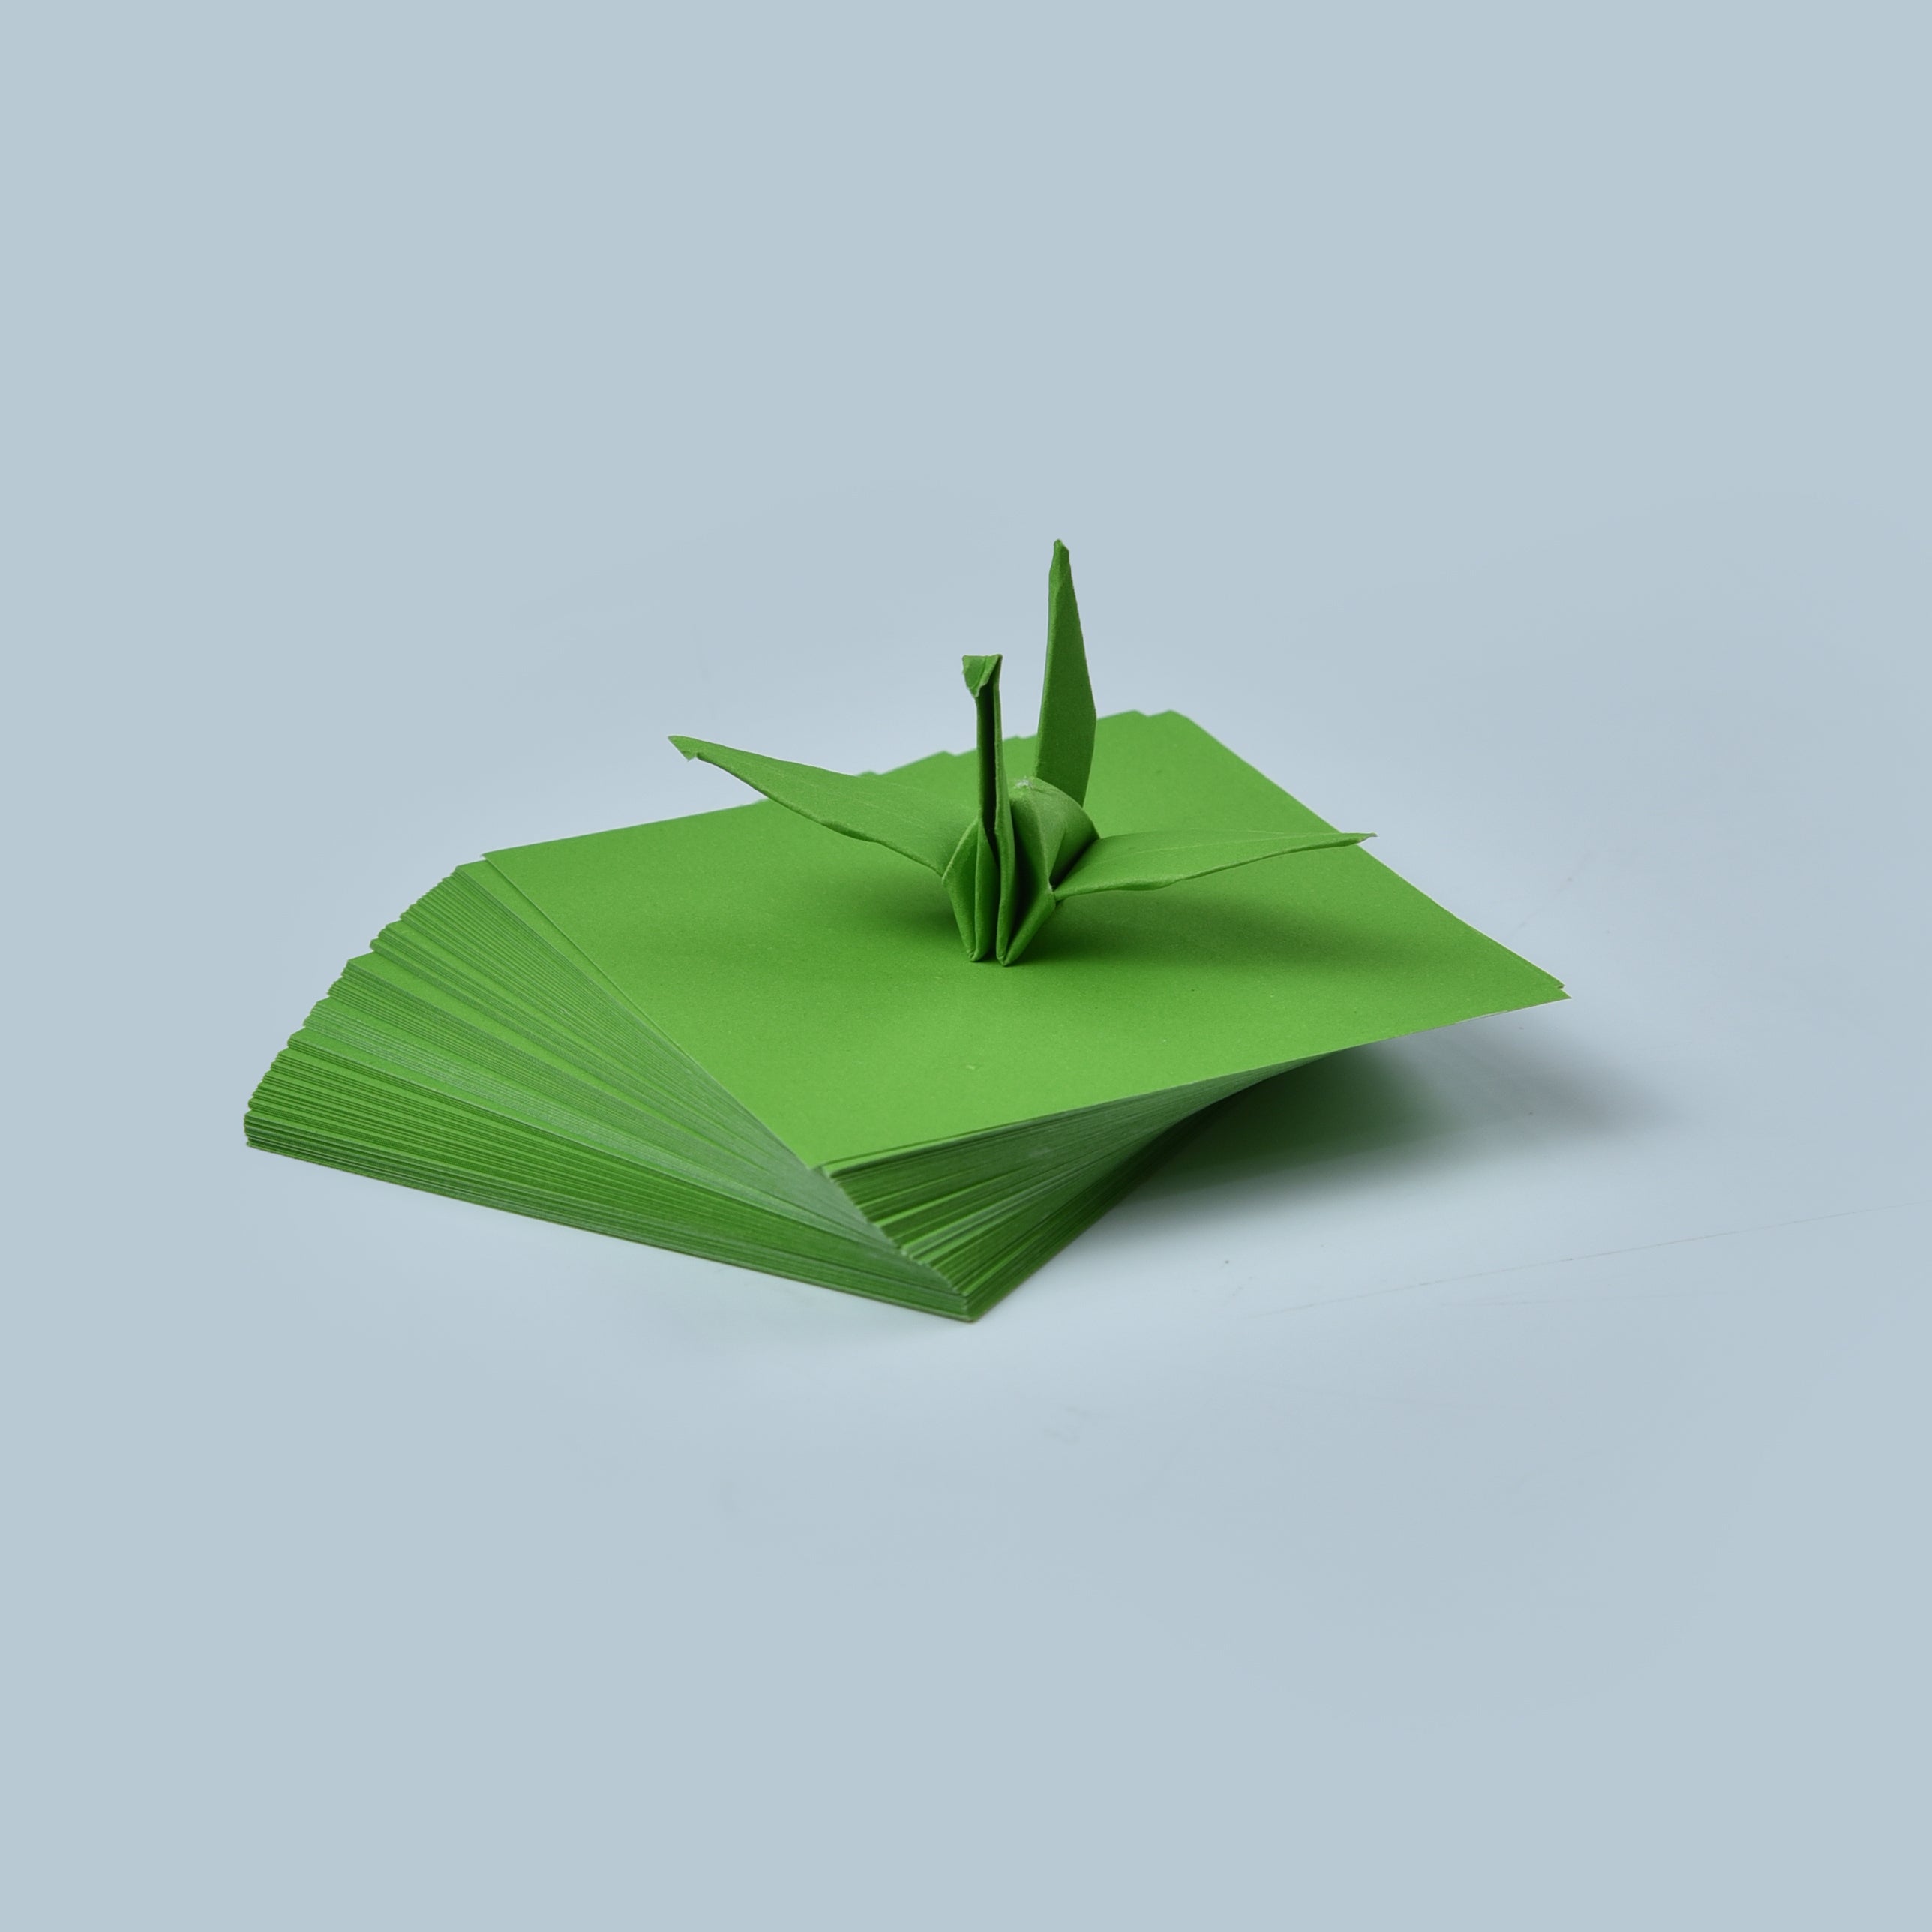 100 Hojas de Papel Origami - 3x3 pulgadas - Paquete de Papel Cuadrado para Plegar, Grullas de Origami y Decoración - S25